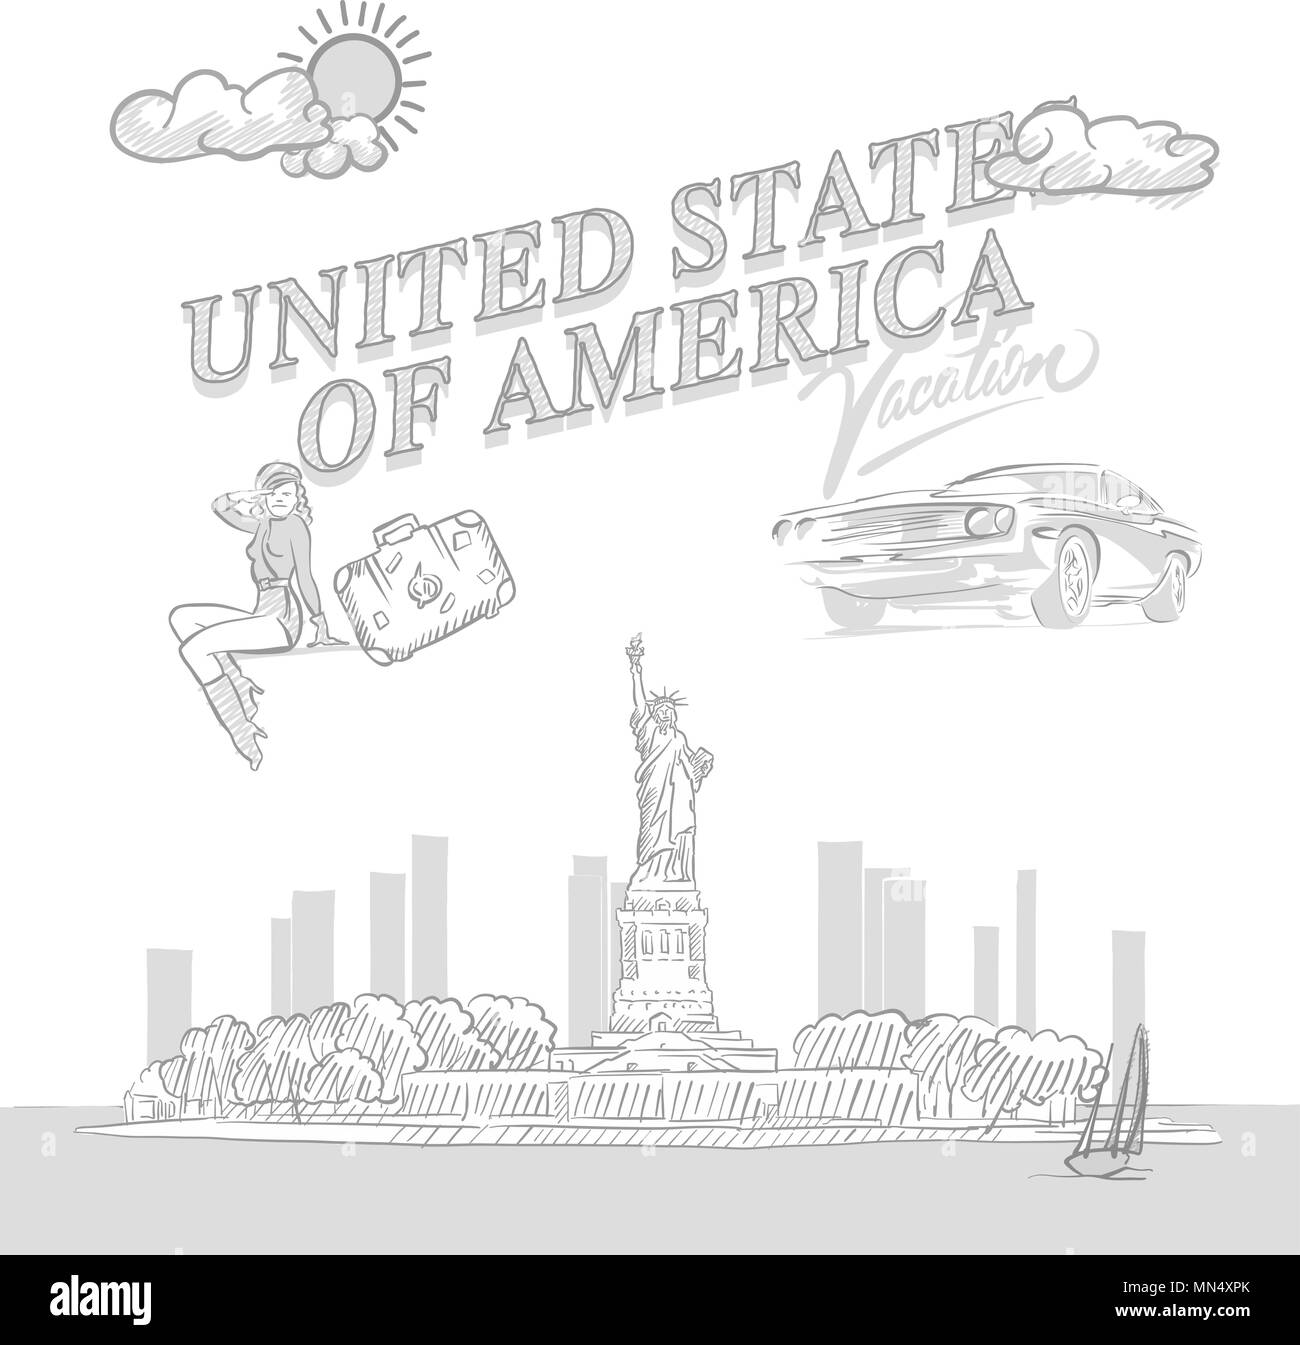 United States travel marketing, ensemble d'une main les dessins vectoriels. Illustration de Vecteur